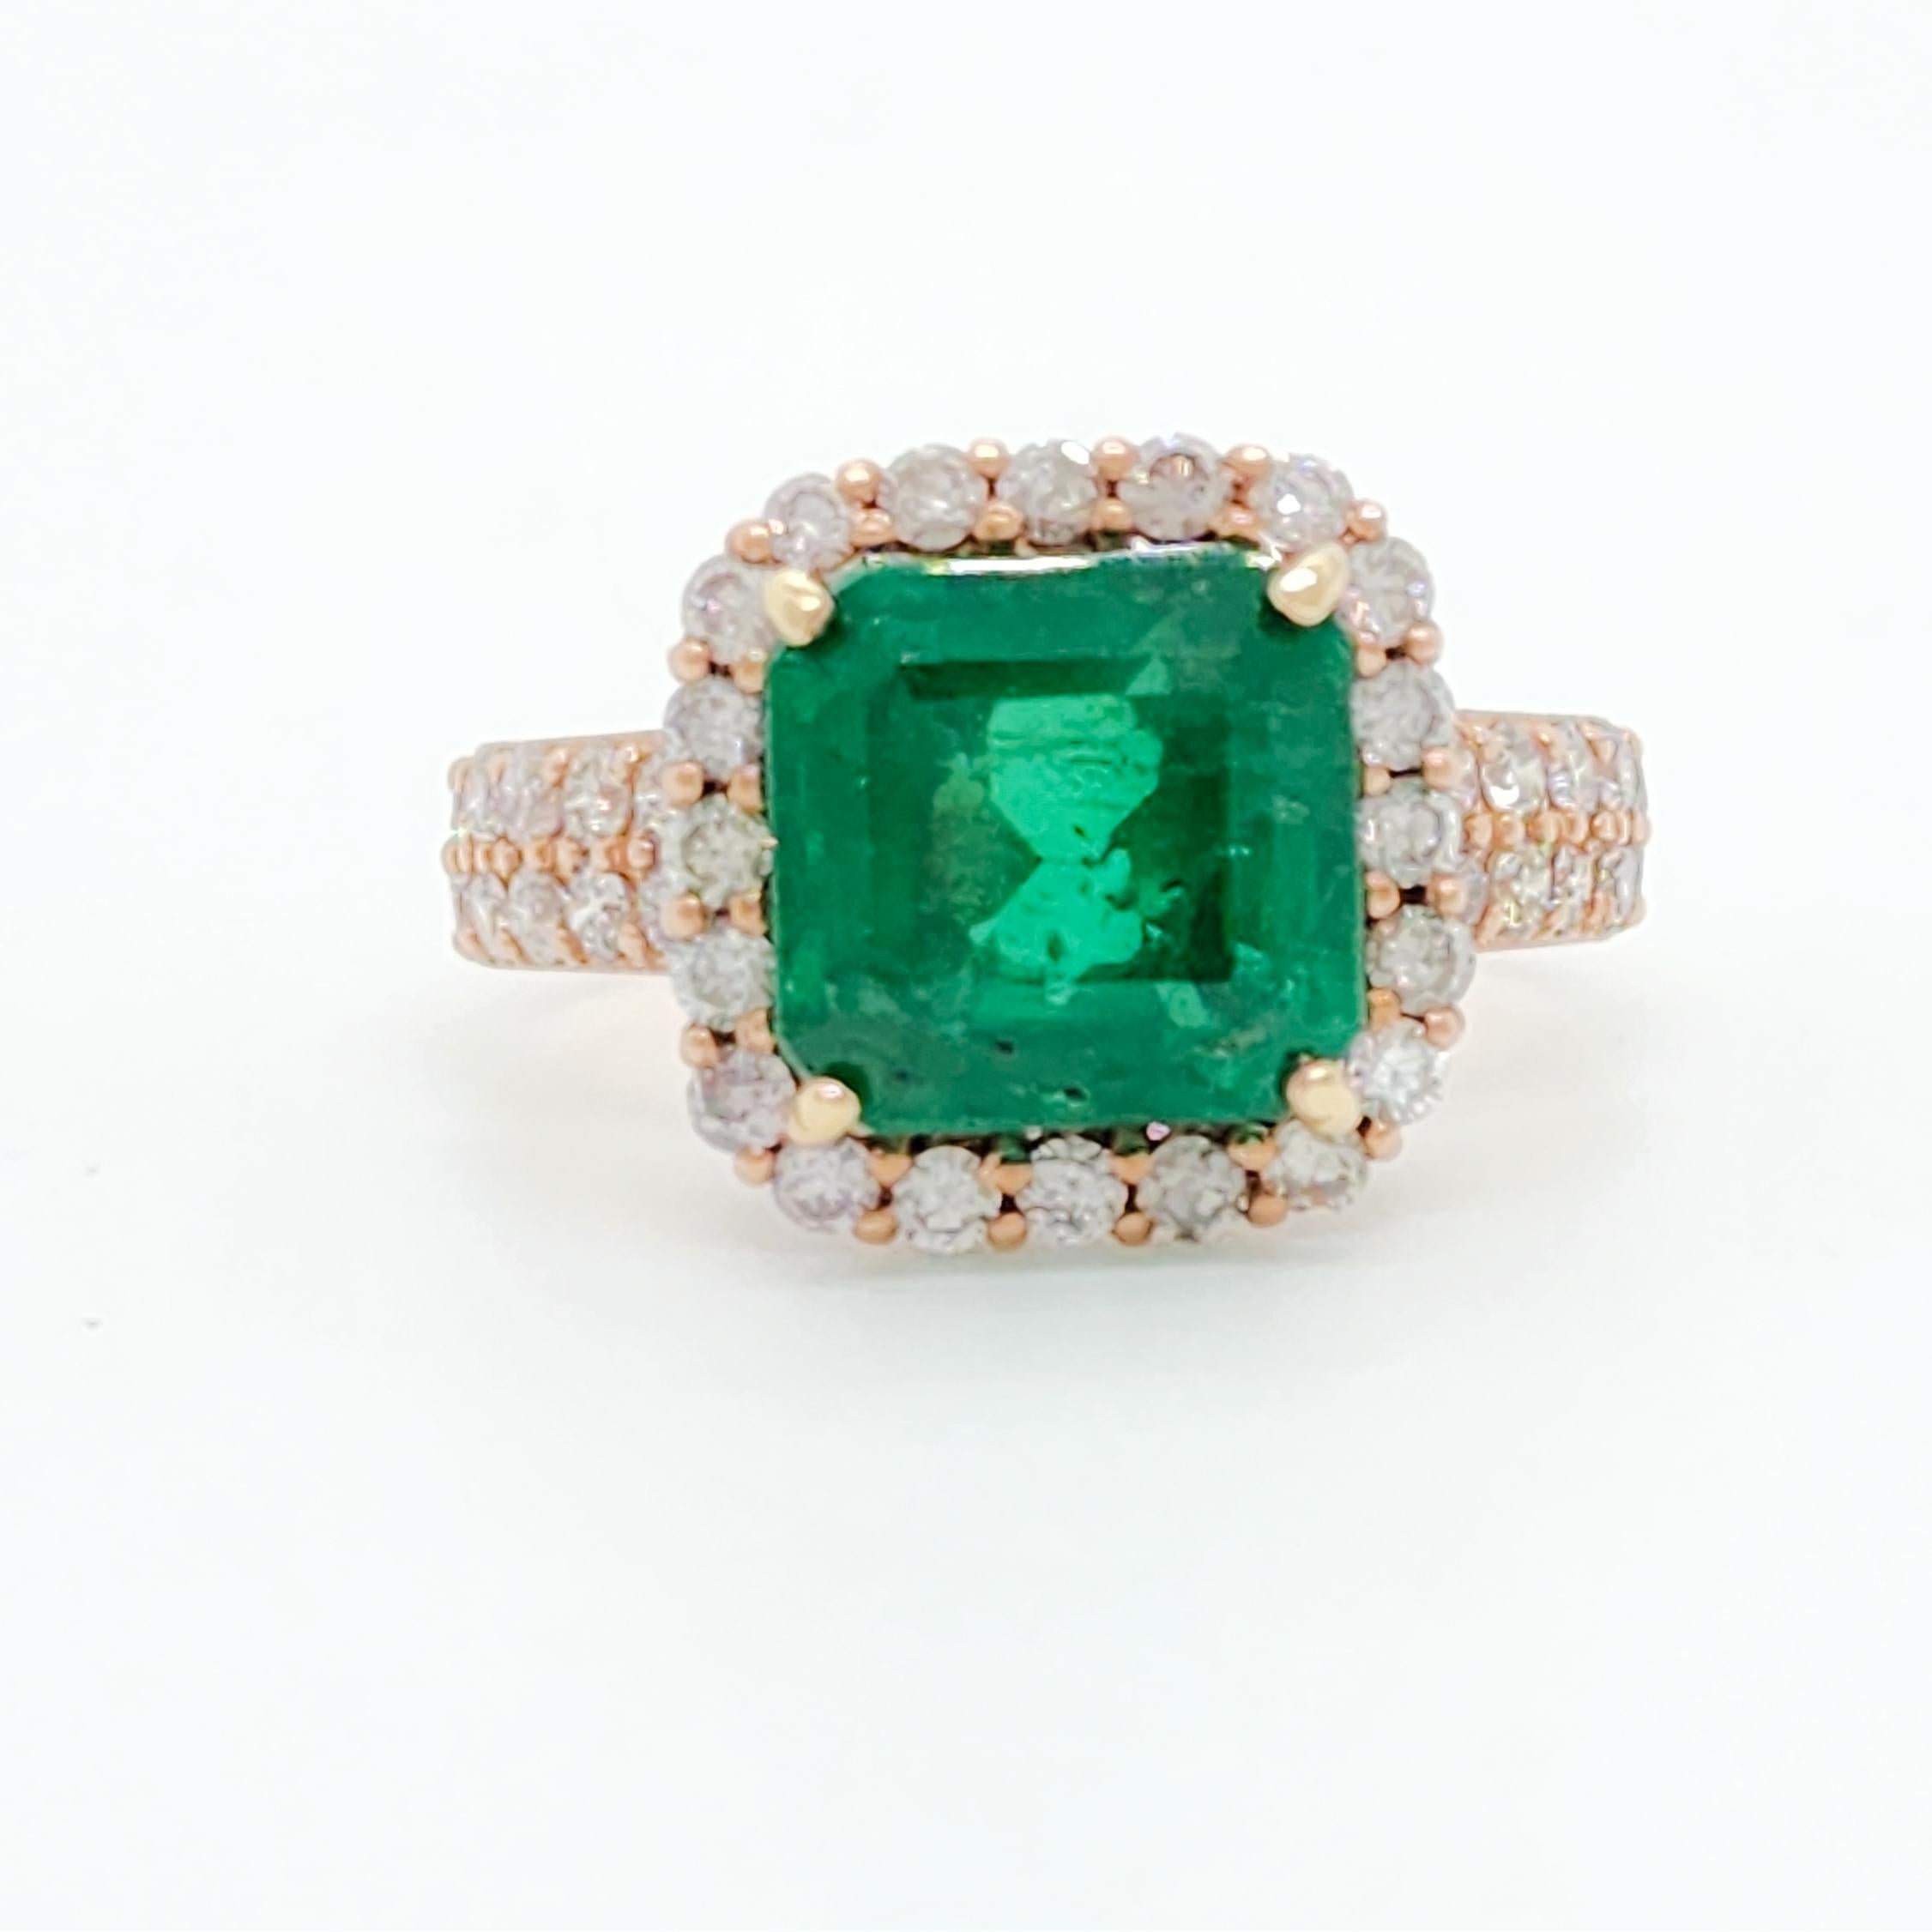 Wunderschönes 4,33 ct. hellgrünes sambisches Smaragd-Achteck mit weißen Diamanten guter Qualität.  Handgefertigt aus 18k Roségold.  Ringgröße 7,75.